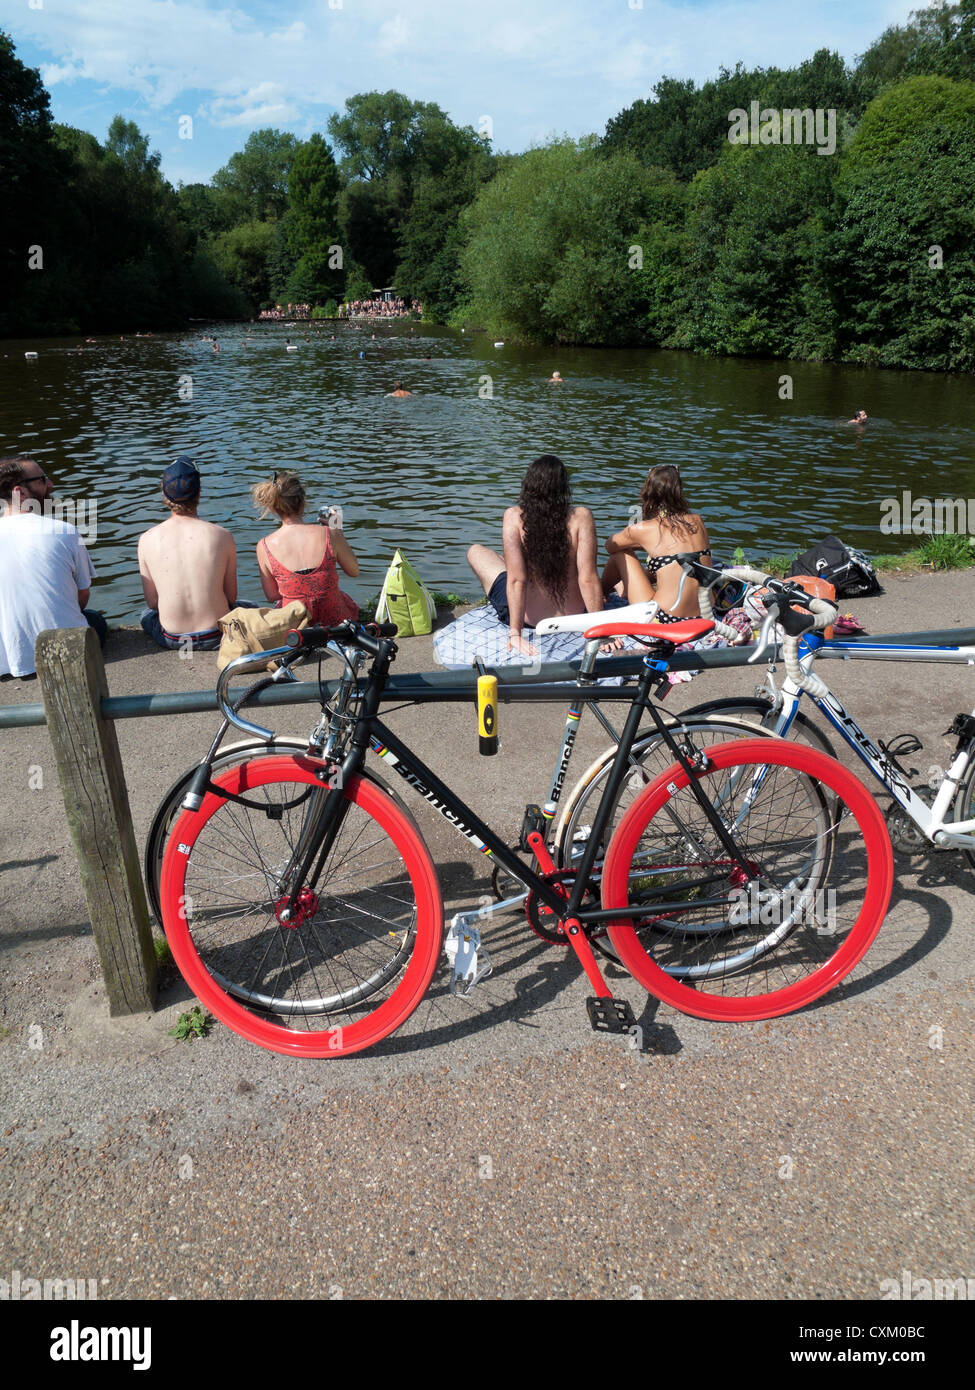 Baigneurs personnes et vélos vélos à l'étang de baignade mixte Hampstead Heath lors d'une journée chaude en été Nord de Londres Royaume-Uni Grande-Bretagne KATHY DEWITT Banque D'Images